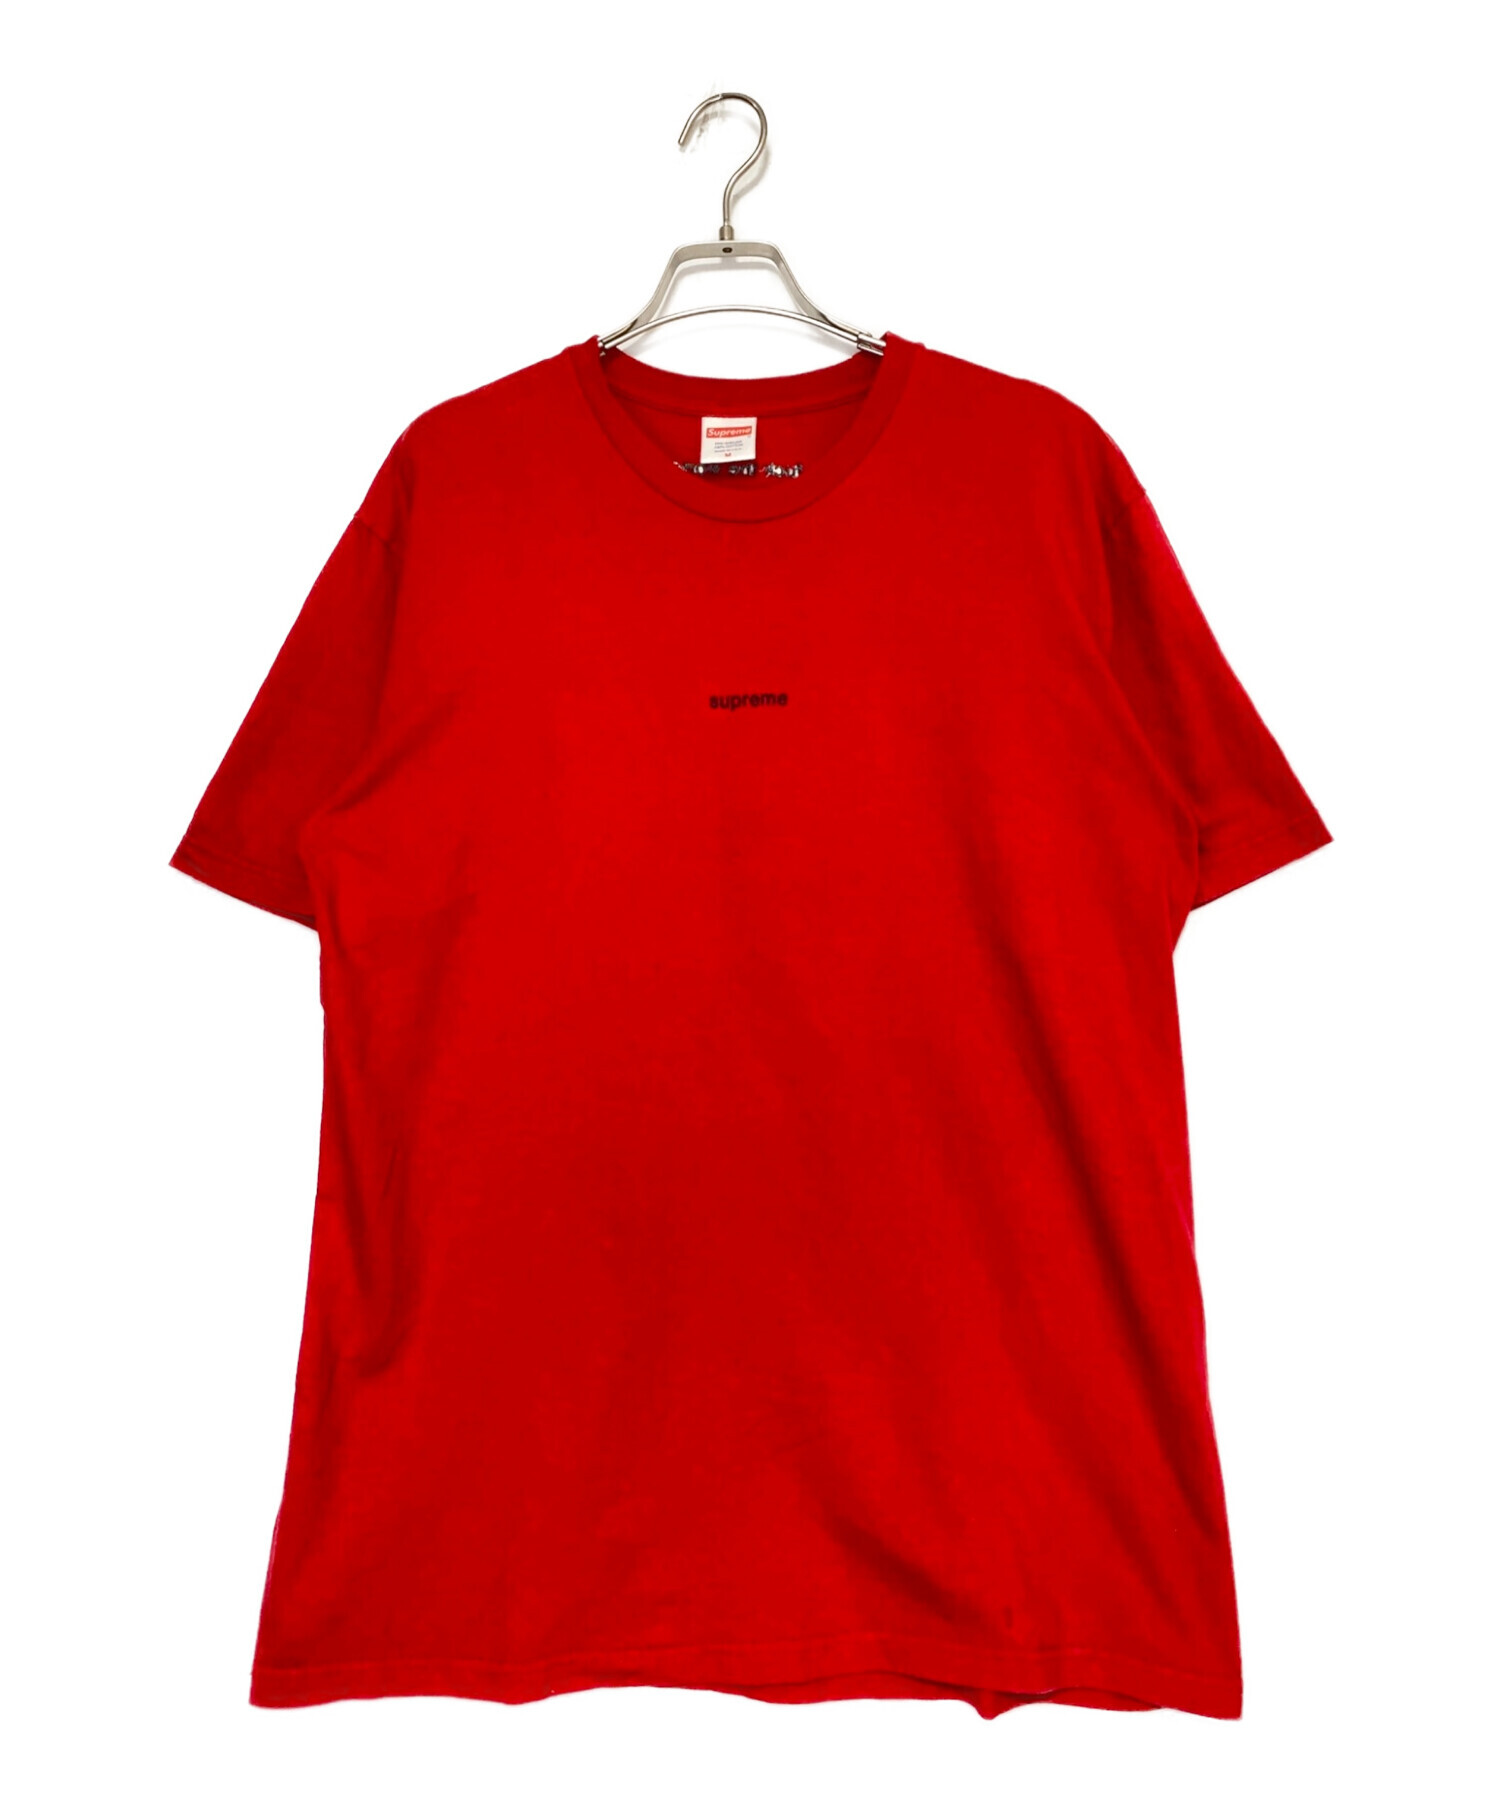 超歓迎 Supreme - supreme 2018SS FTW TEE Tシャツの通販 by Sup555